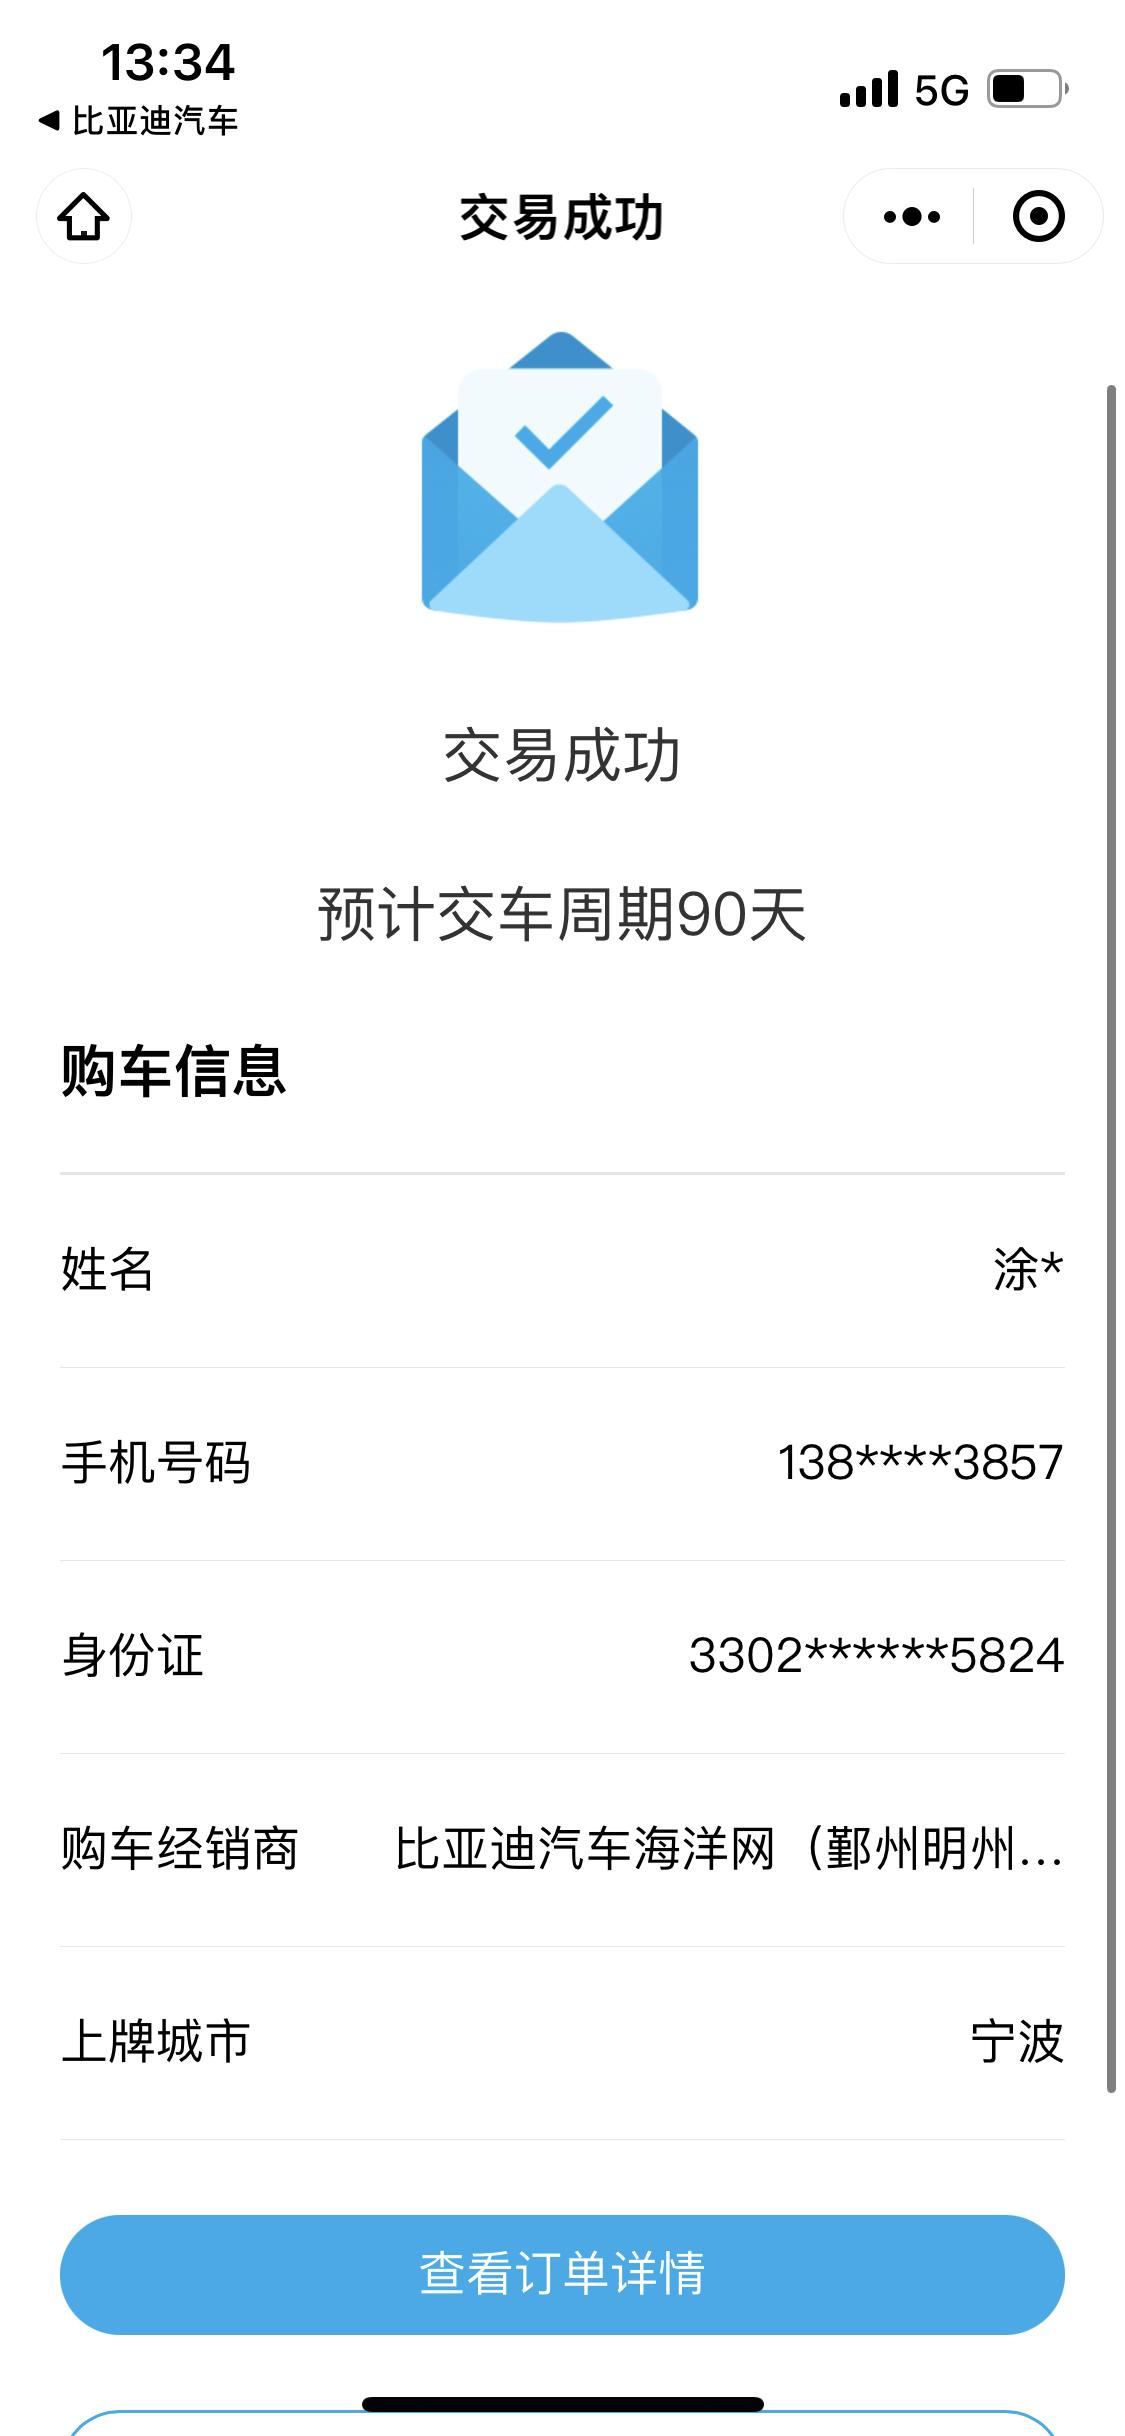 3月6日刚定海豚106800那款，坐标浙江宁波，有车友群么，求拉?